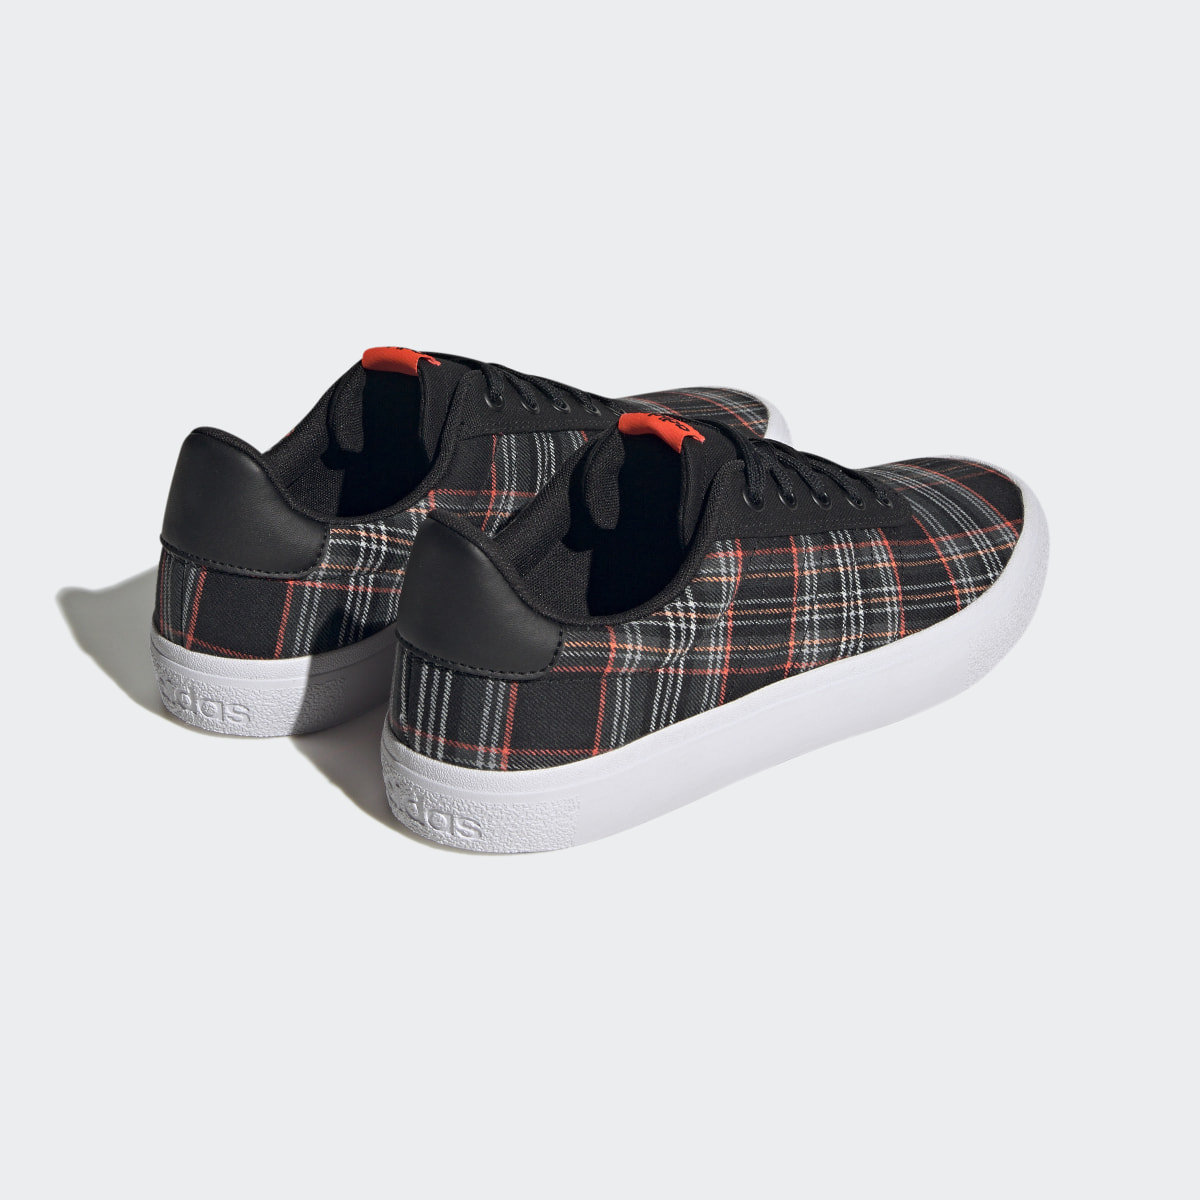 Adidas Chaussure Vulc Raid3r Lifestyle Skateboarding 3-Stripes Branding. 6